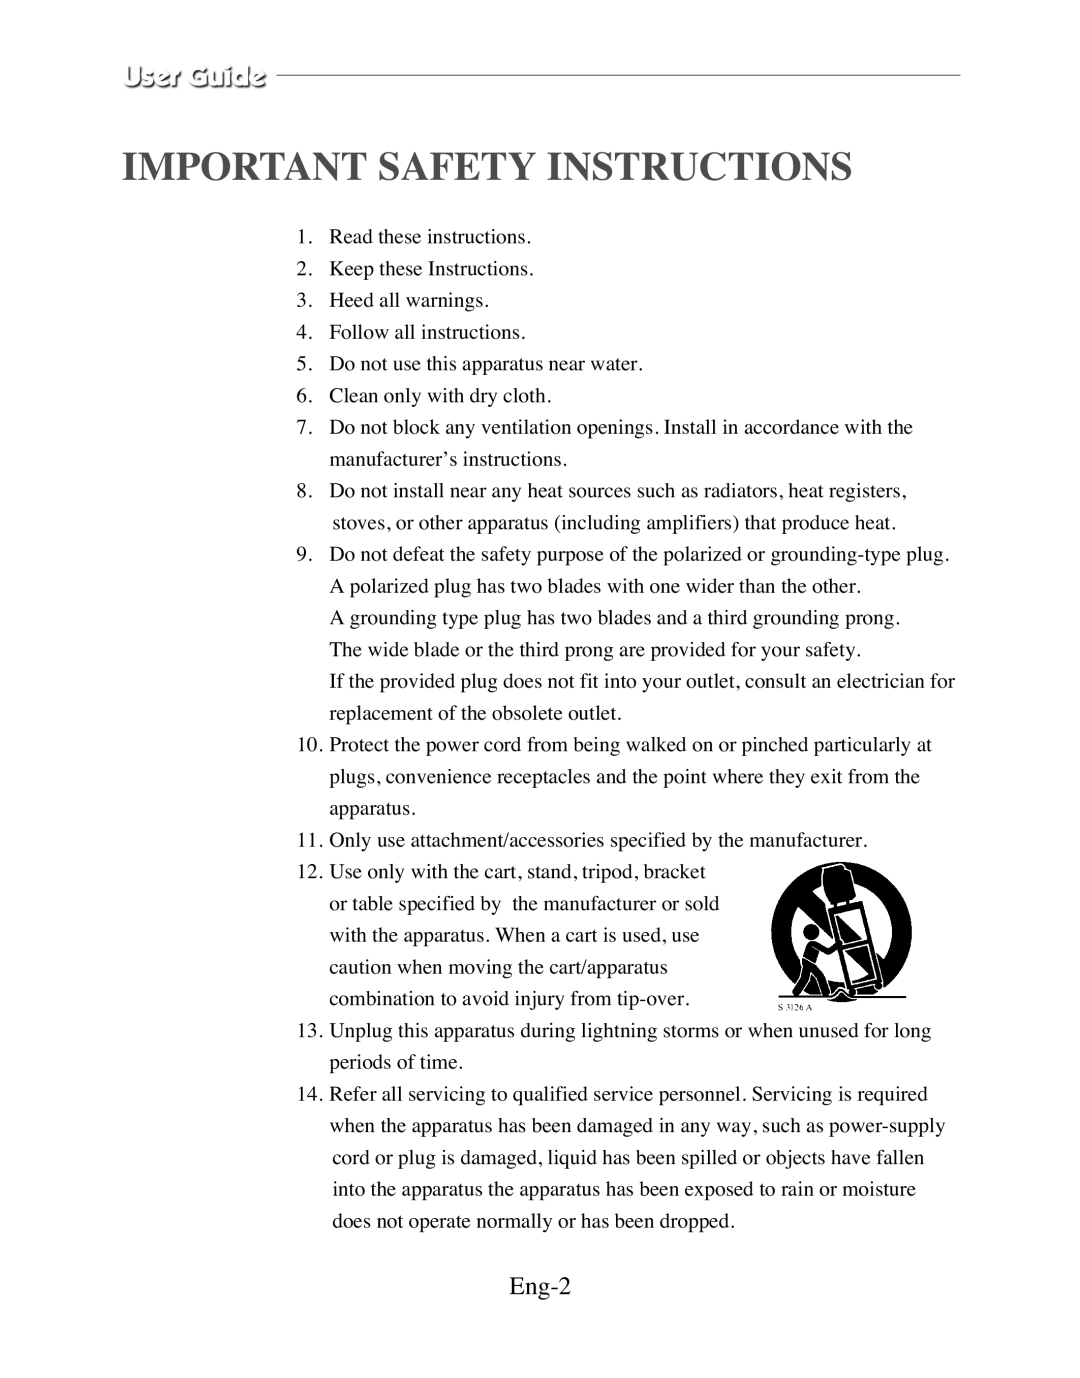 Samsung SMC-212FP, SMC-150FP, SMC-152FPV, SMC-210FPV manual Important Safety Instructions, Eng-2 